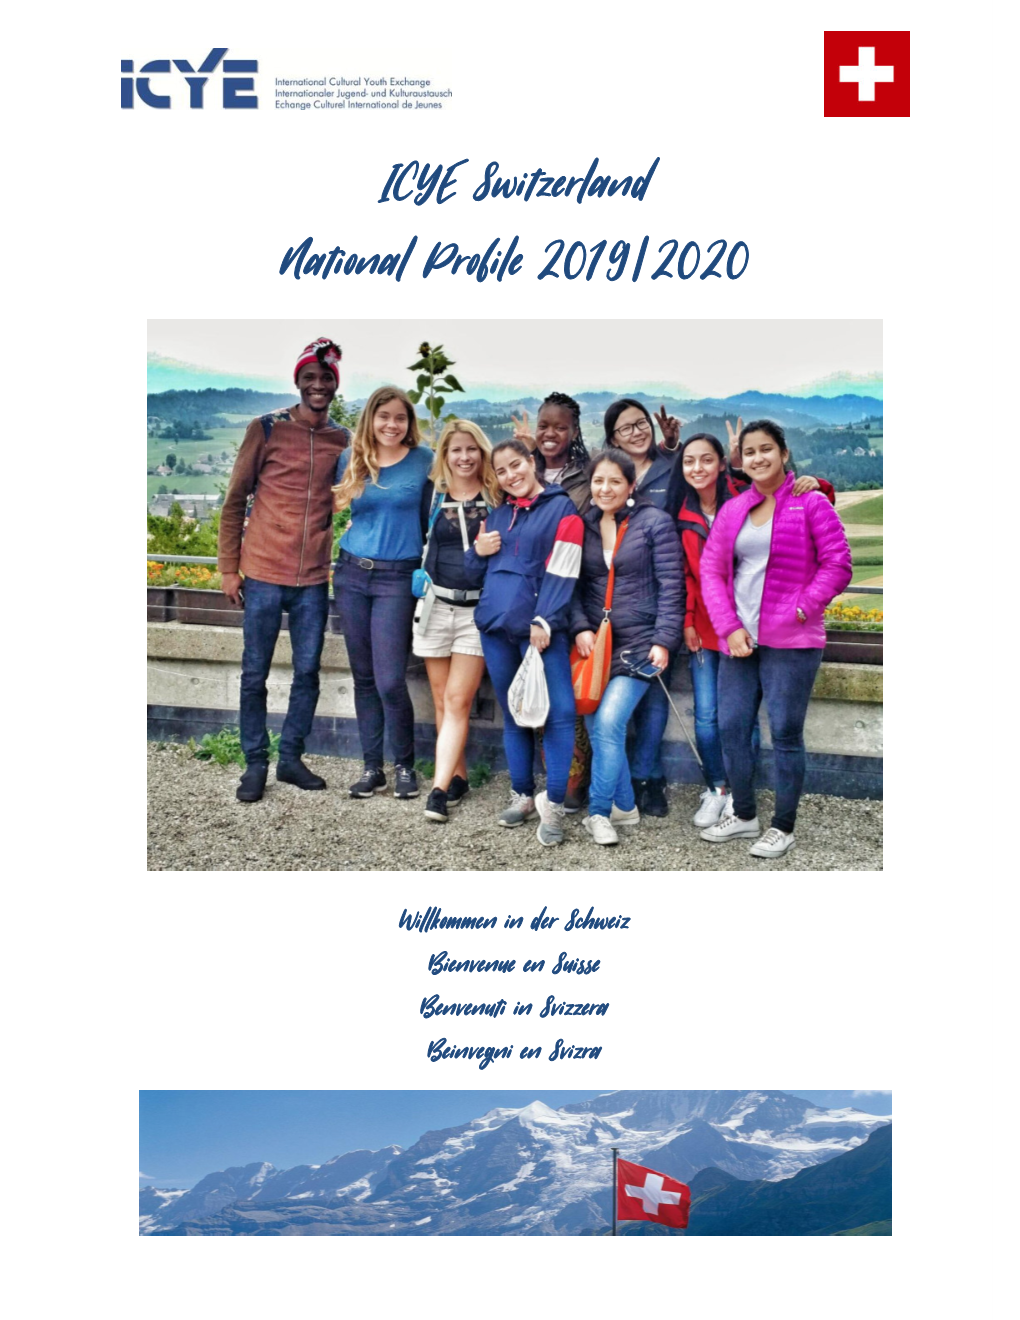 ICYE Switzerland National Profile 2019/2020